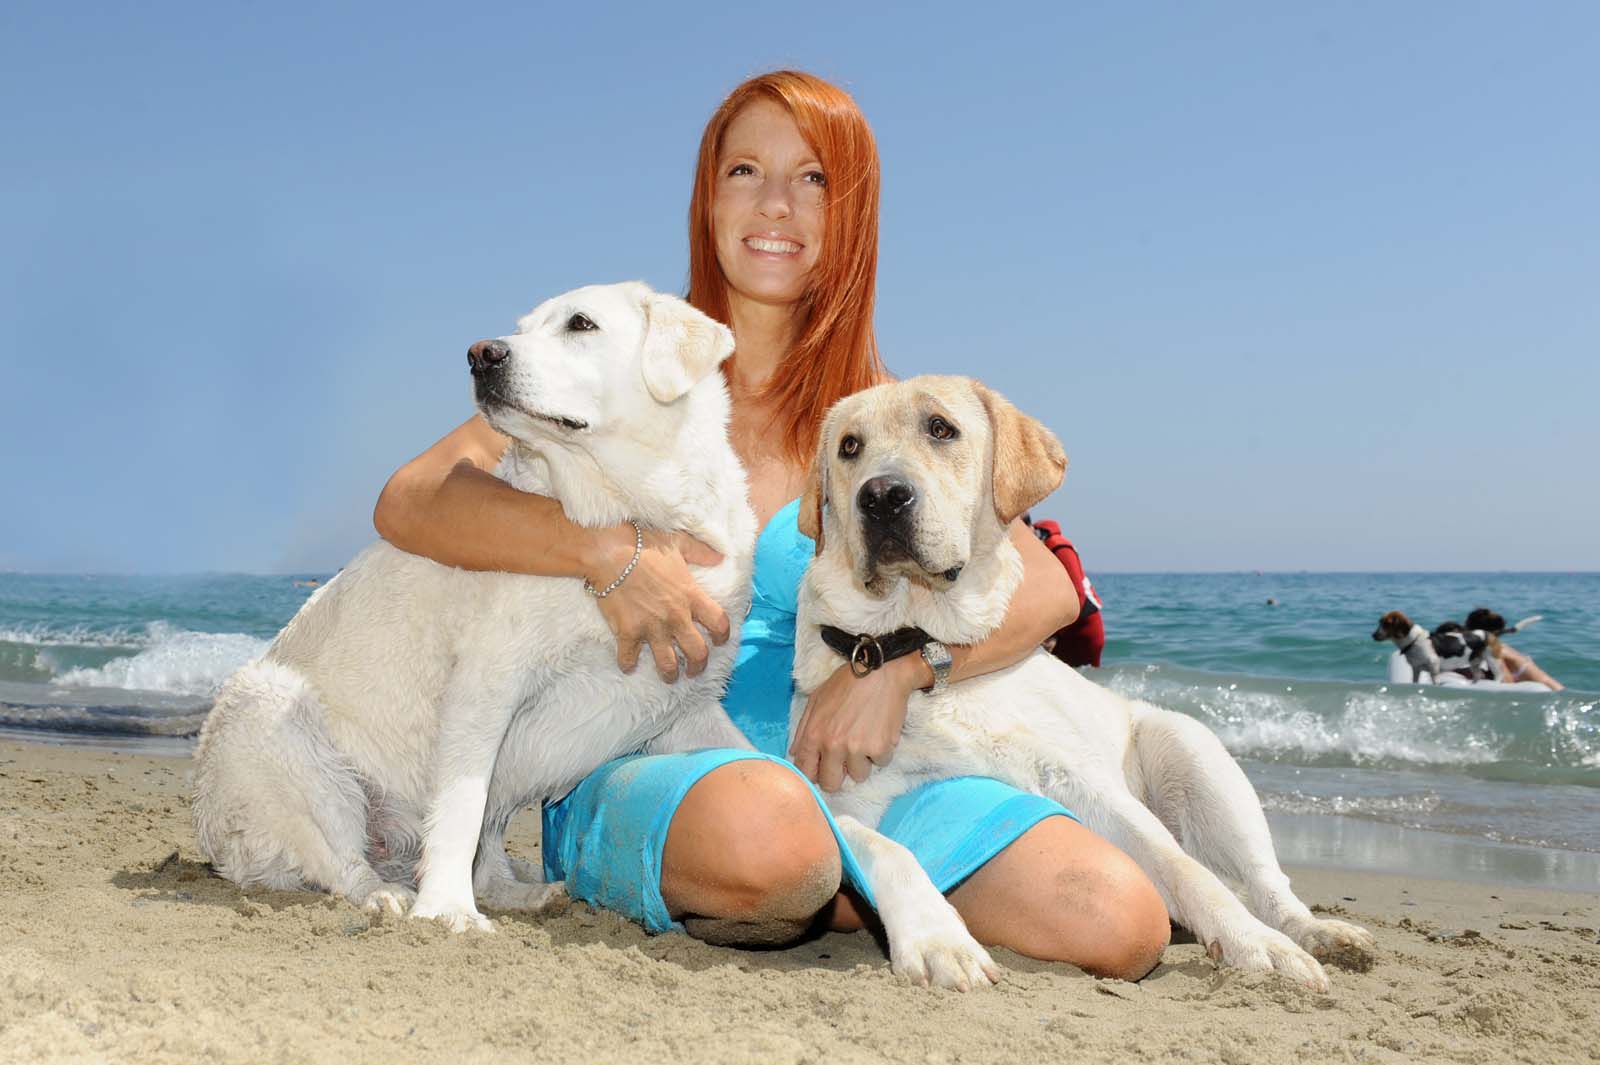 L’onorevole Brambilla visita una dog beach di Lido e presenta il “Manifesto Animalista”